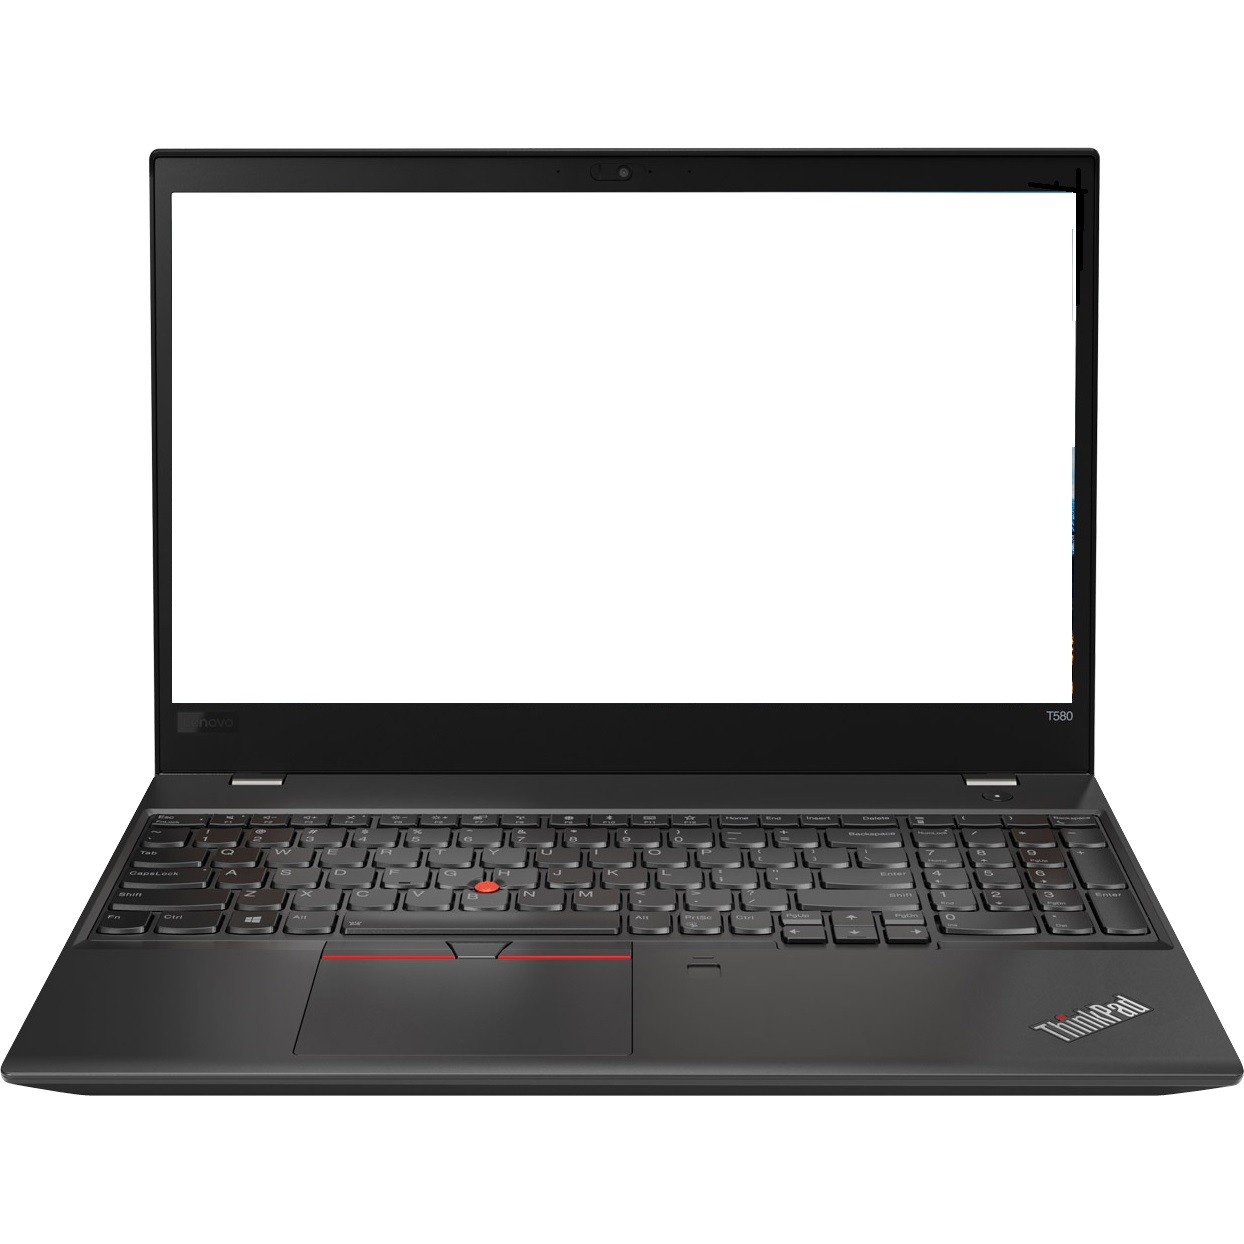 Lenovo ThinkPad T580 15.6" FHD i5-8250U 1.6GHz 8GB 256GB SSD W10P 20L9001NUS R